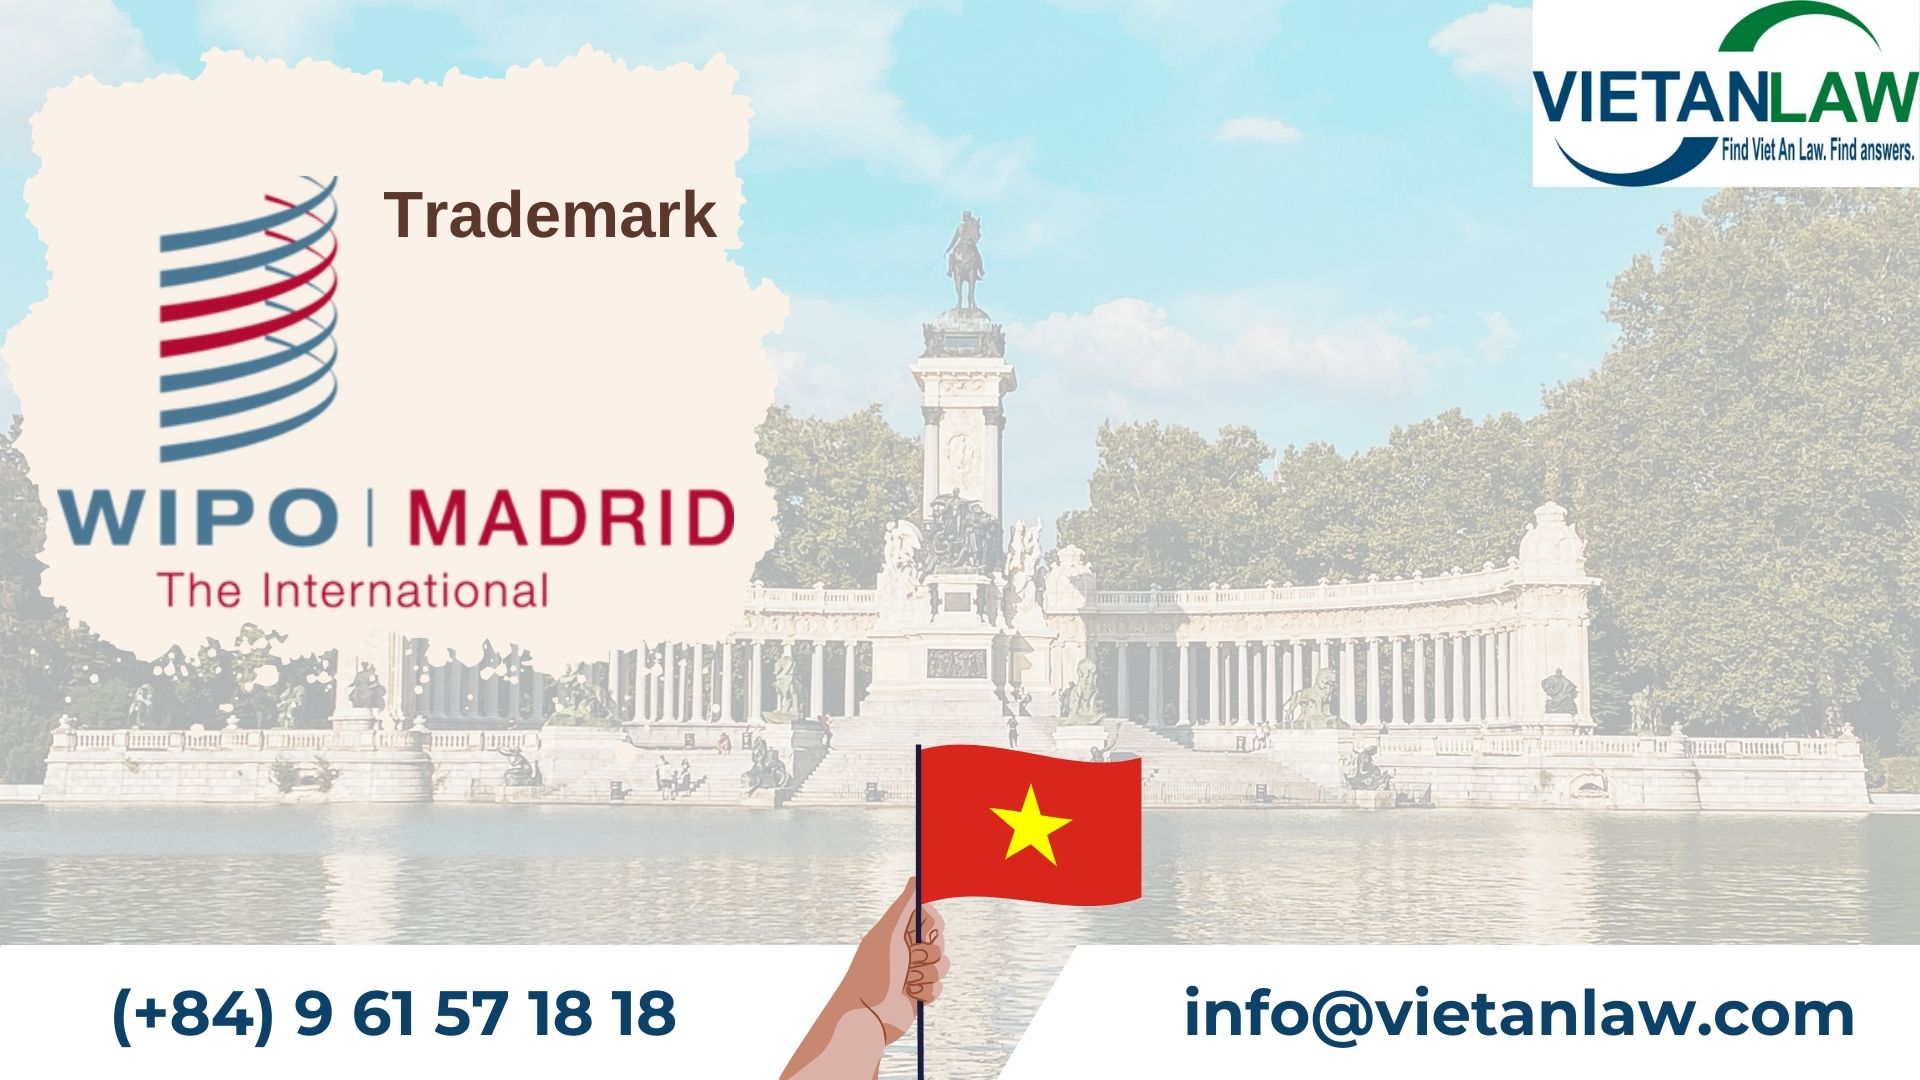 Processing Madrid trademark applications designating Vietnam